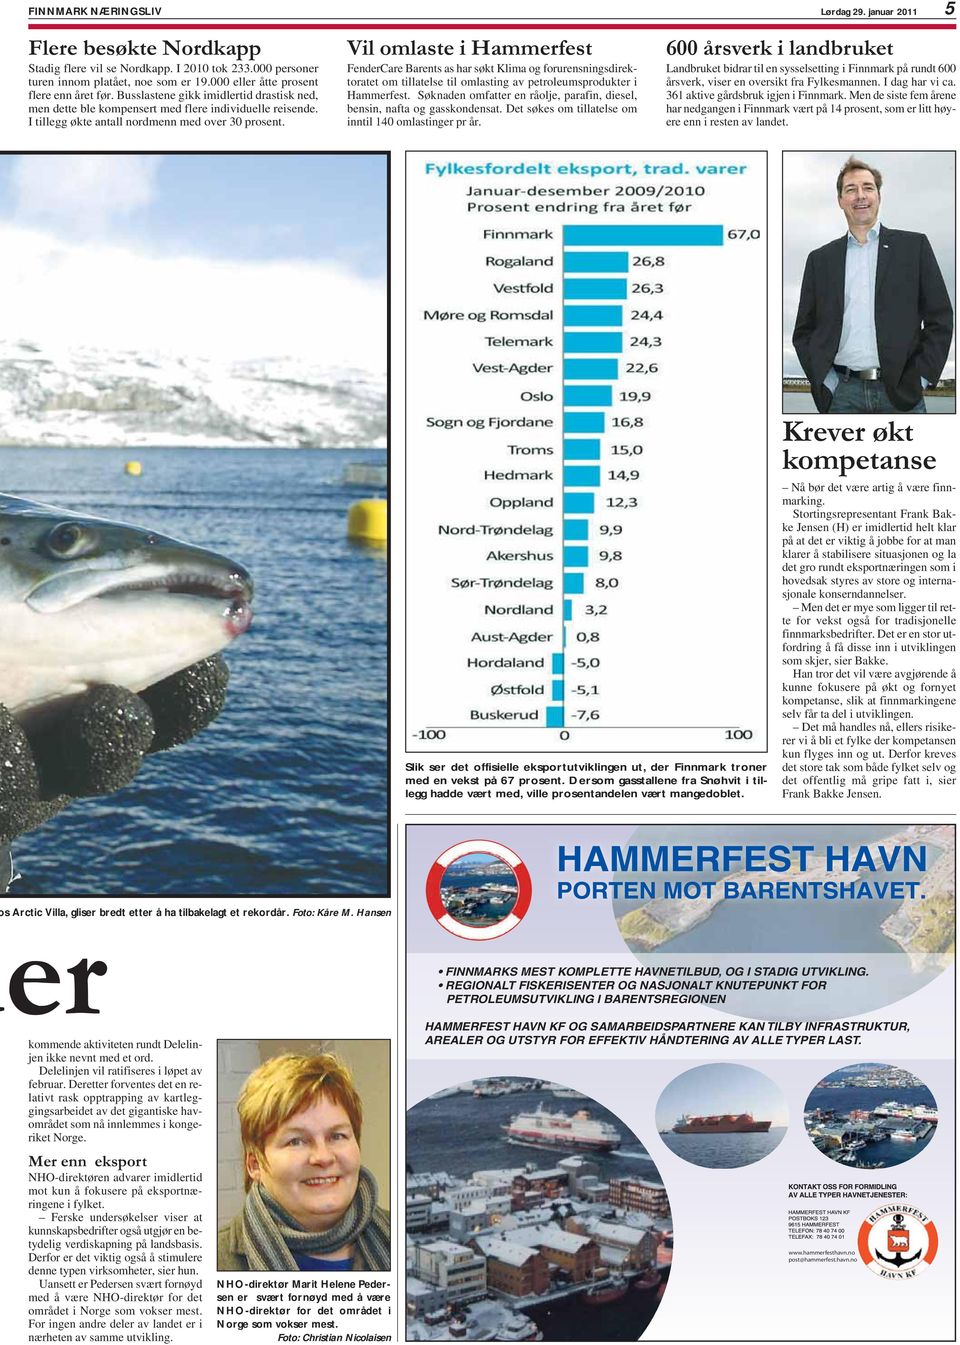 Vil omlaste i Hammerfest FenderCare Barents as har søkt Klima og forurensningsdirektoratet om tillatelse til omlasting av petroleumsprodukter i Hammerfest.